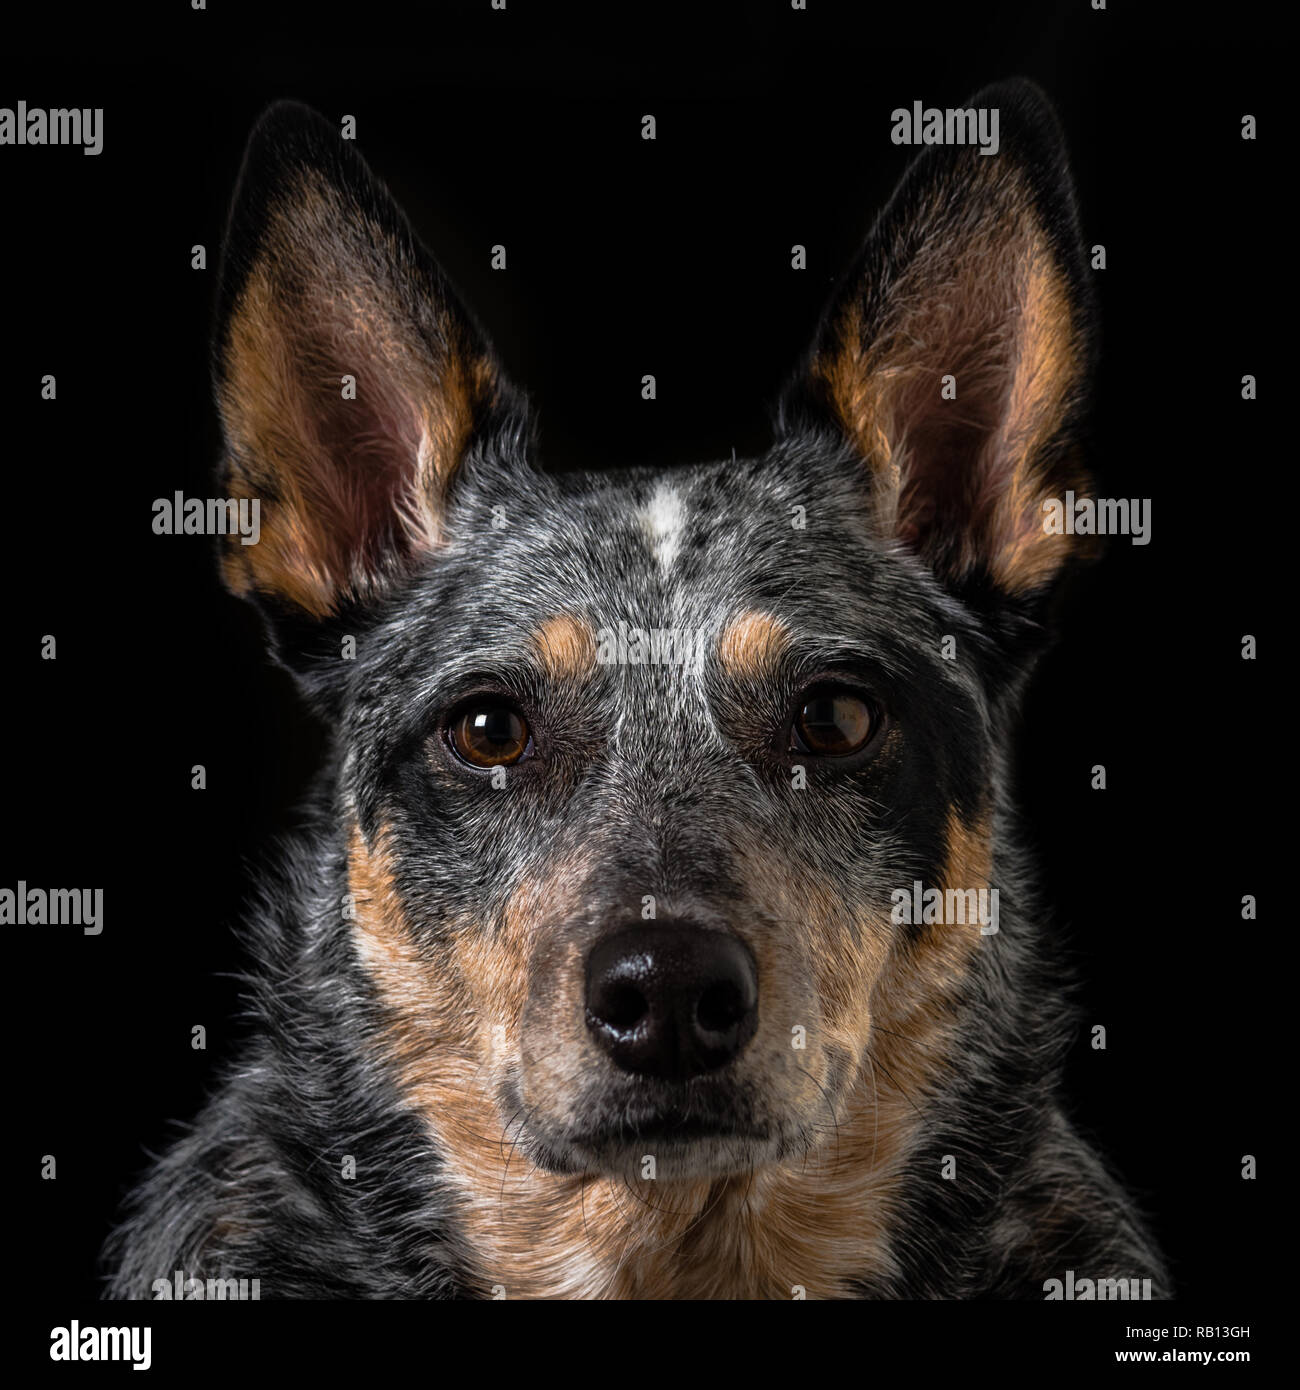 Schönes Studio Portraits auf einem schwarzen Hintergrund einer tricolor Australian Cattle Dog auch als Blue Heeler bekannt. Stockfoto